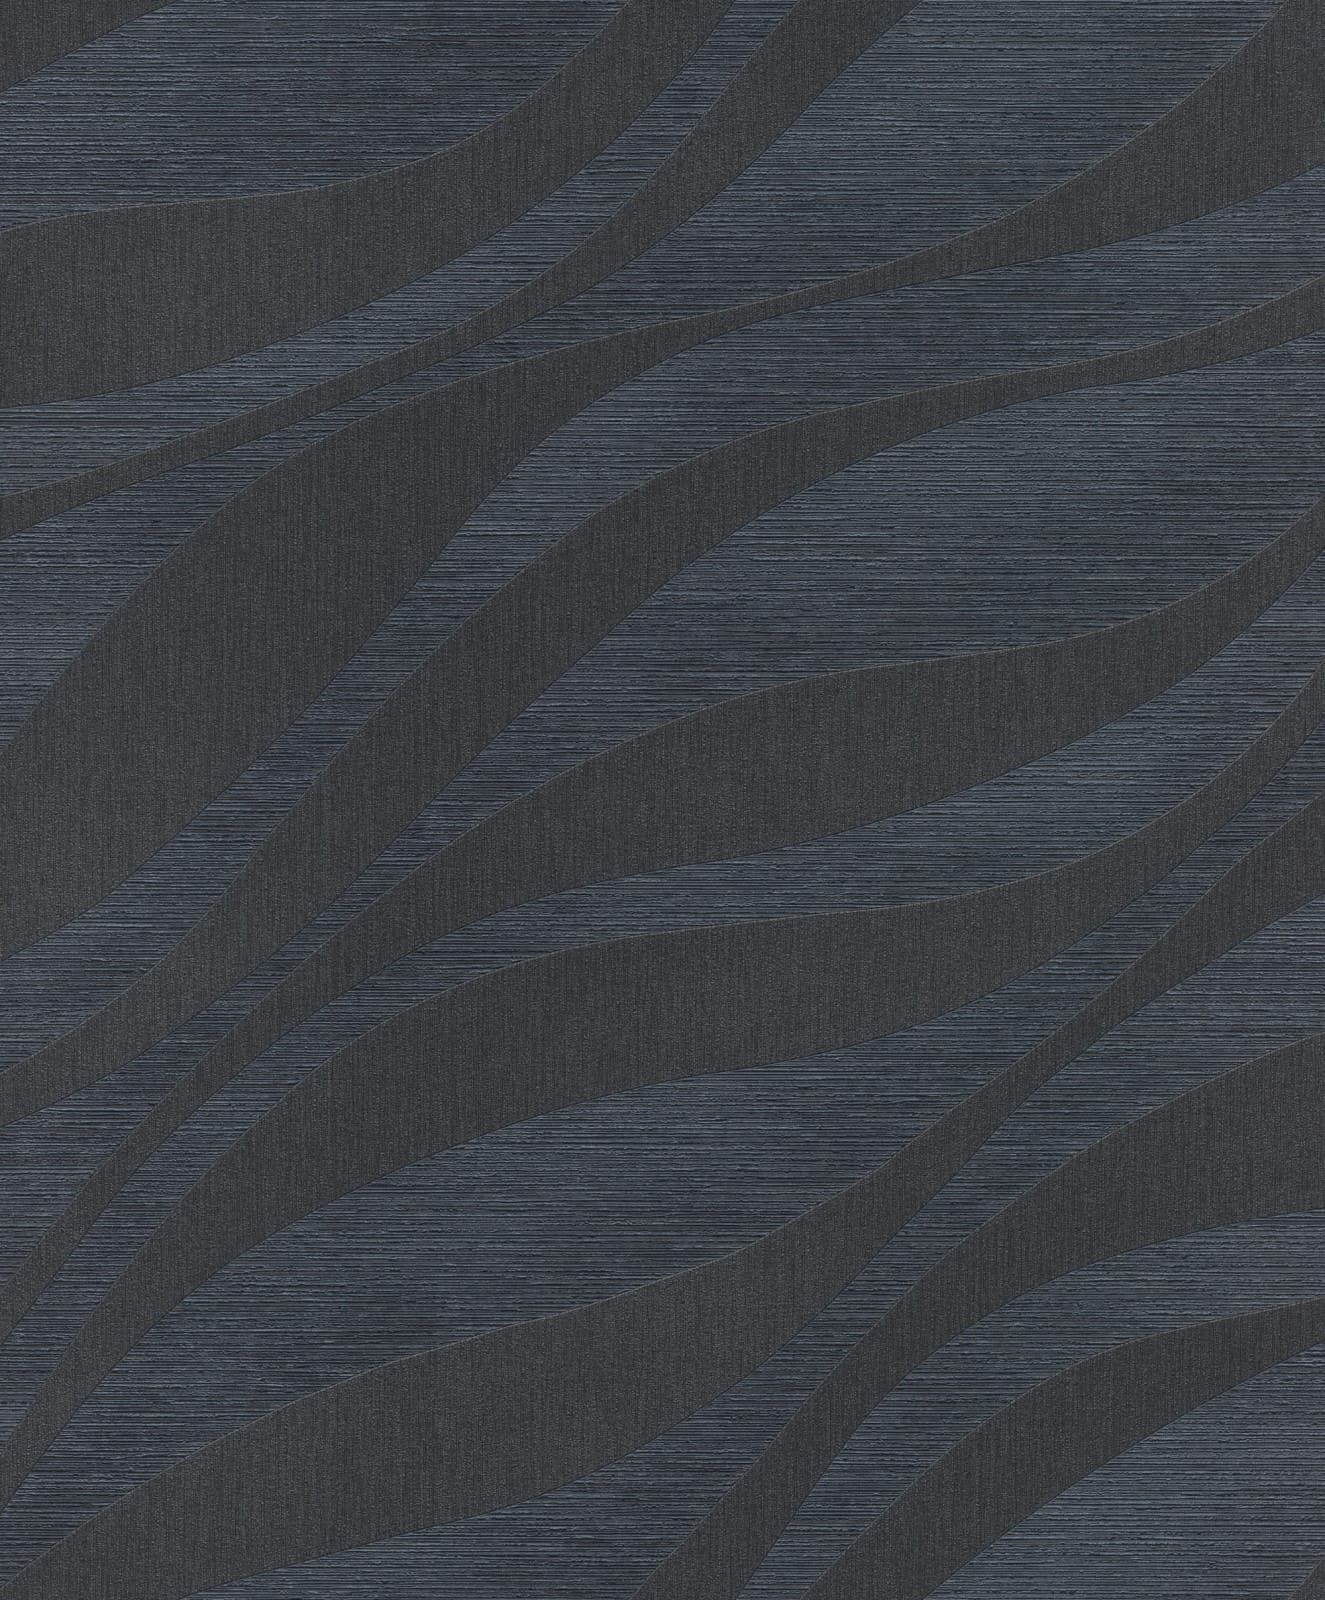 Ταπετσαρία Τοιχου Κύματα σε Μπλε/ Γκρι Χρωματισμούς 608076 0.53cm x 10.05m